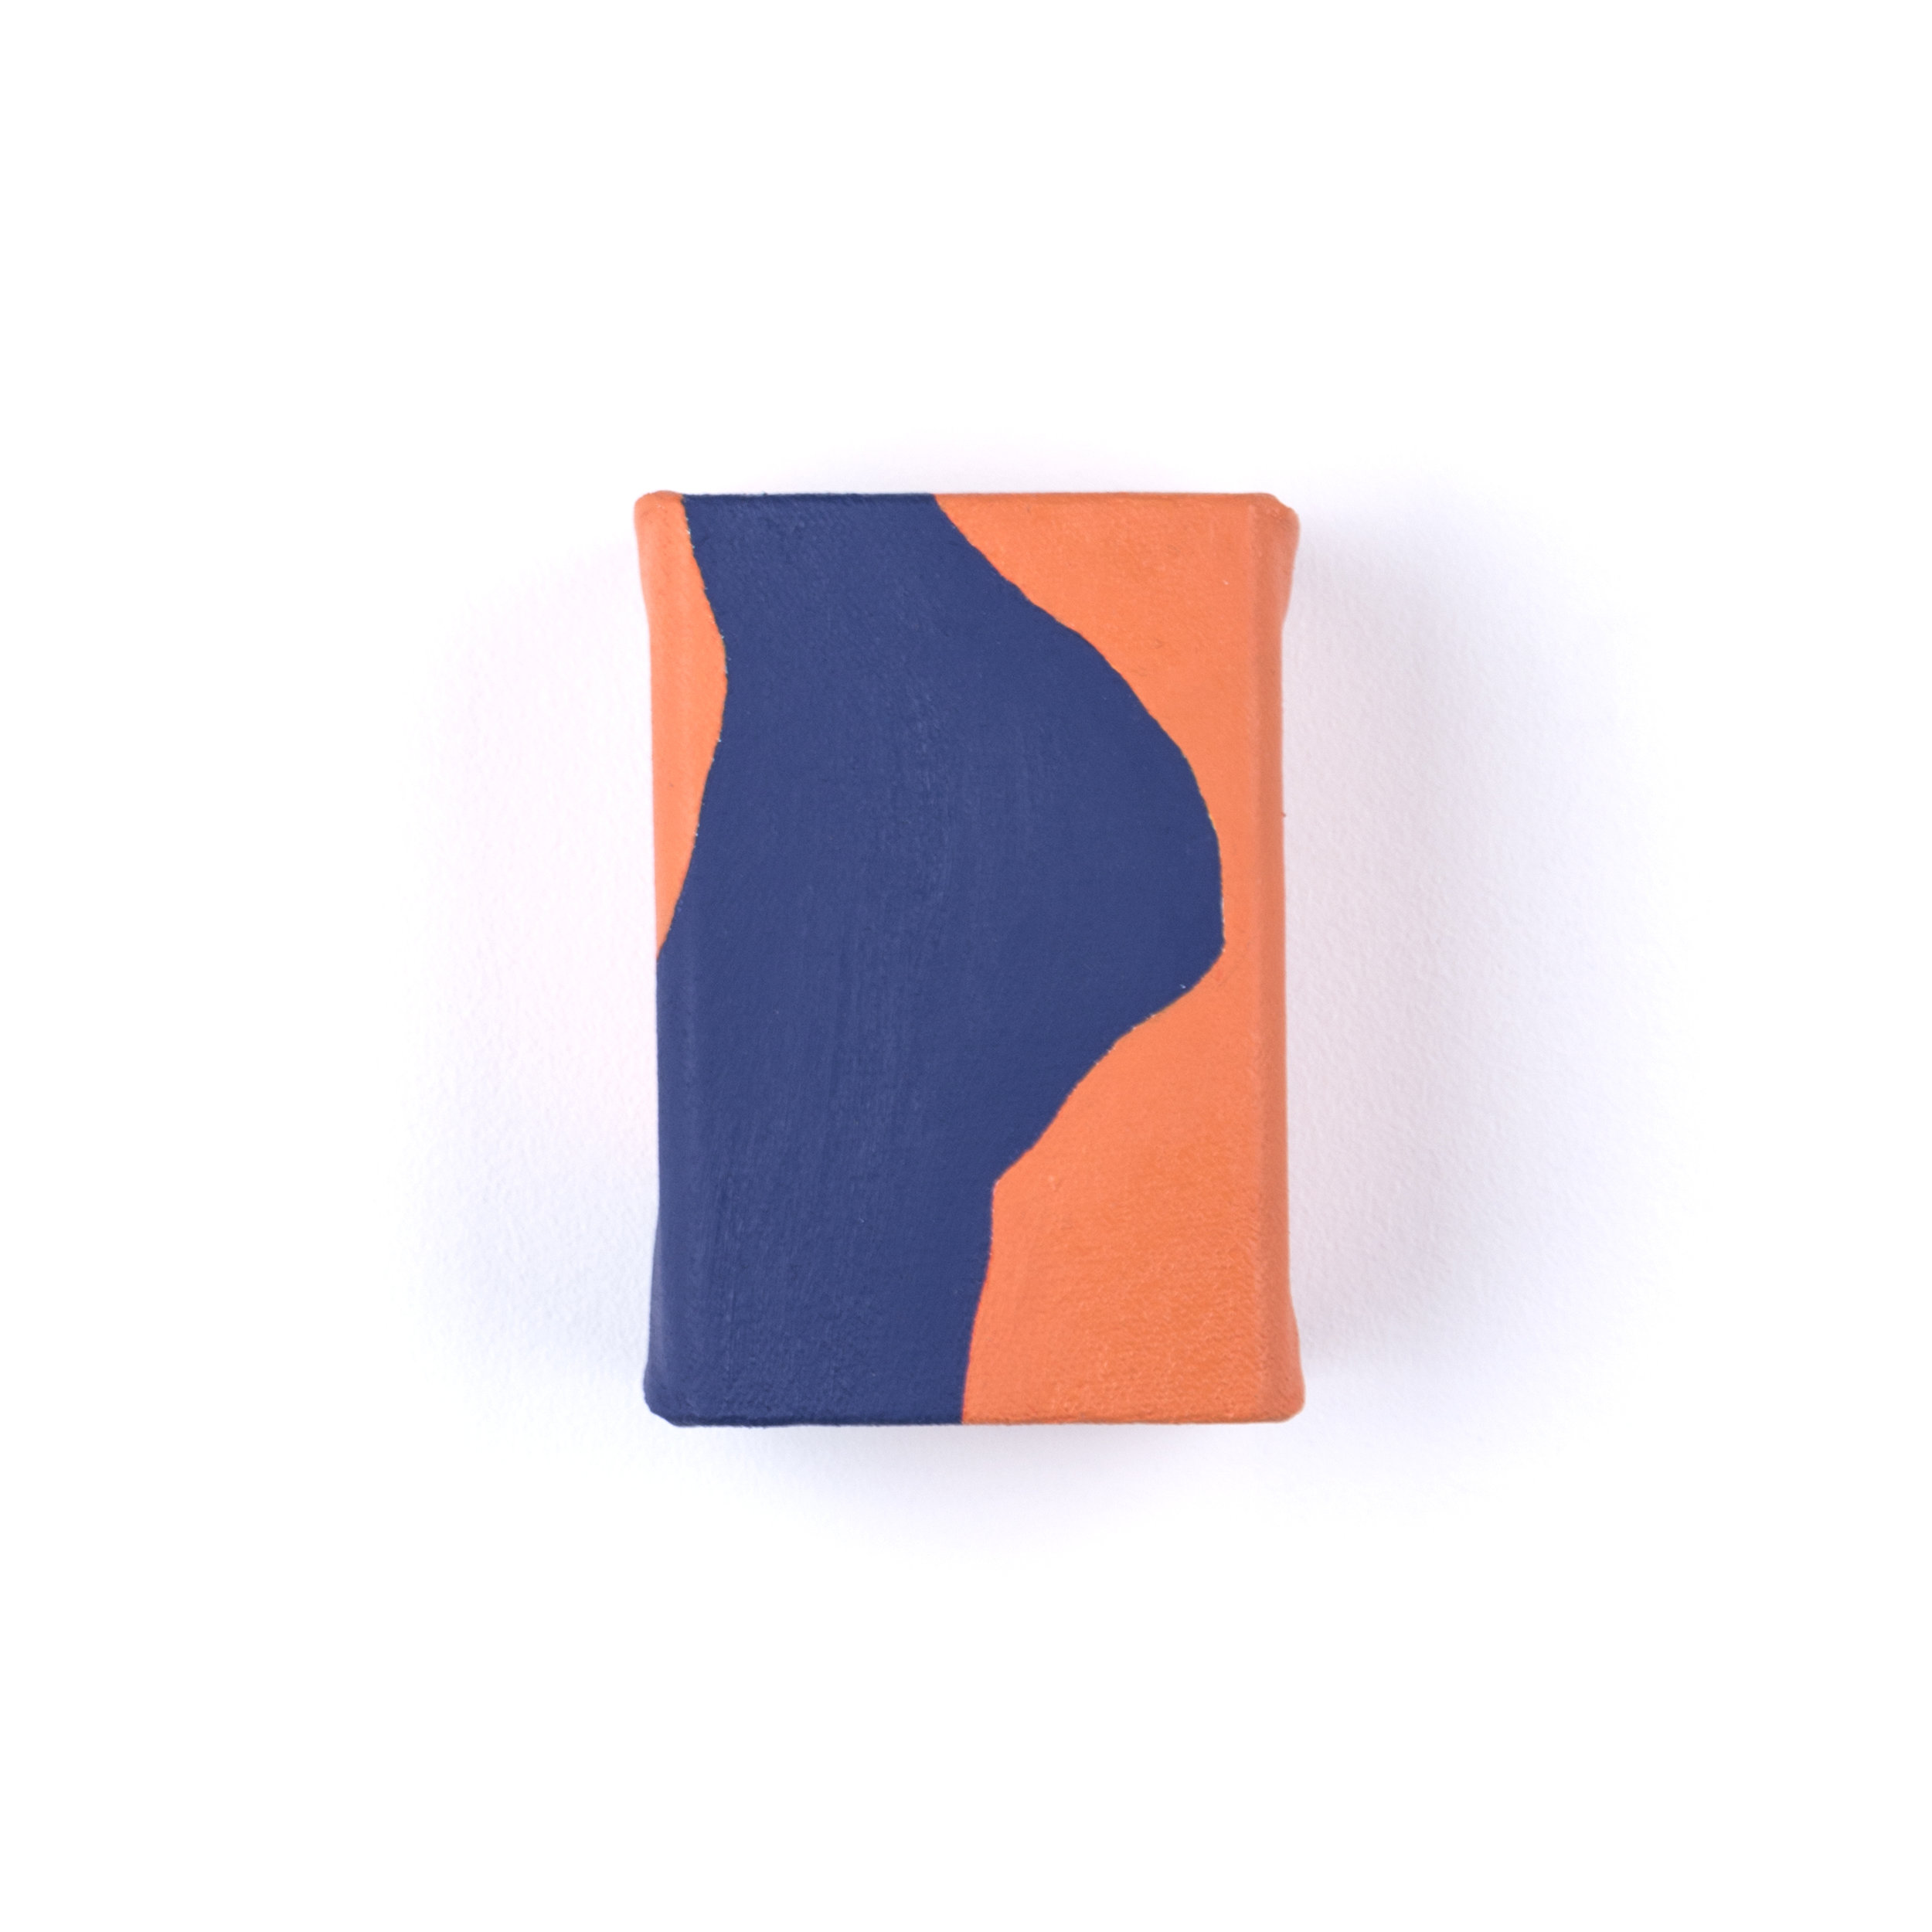 Untitled (Orange and Blue Study)